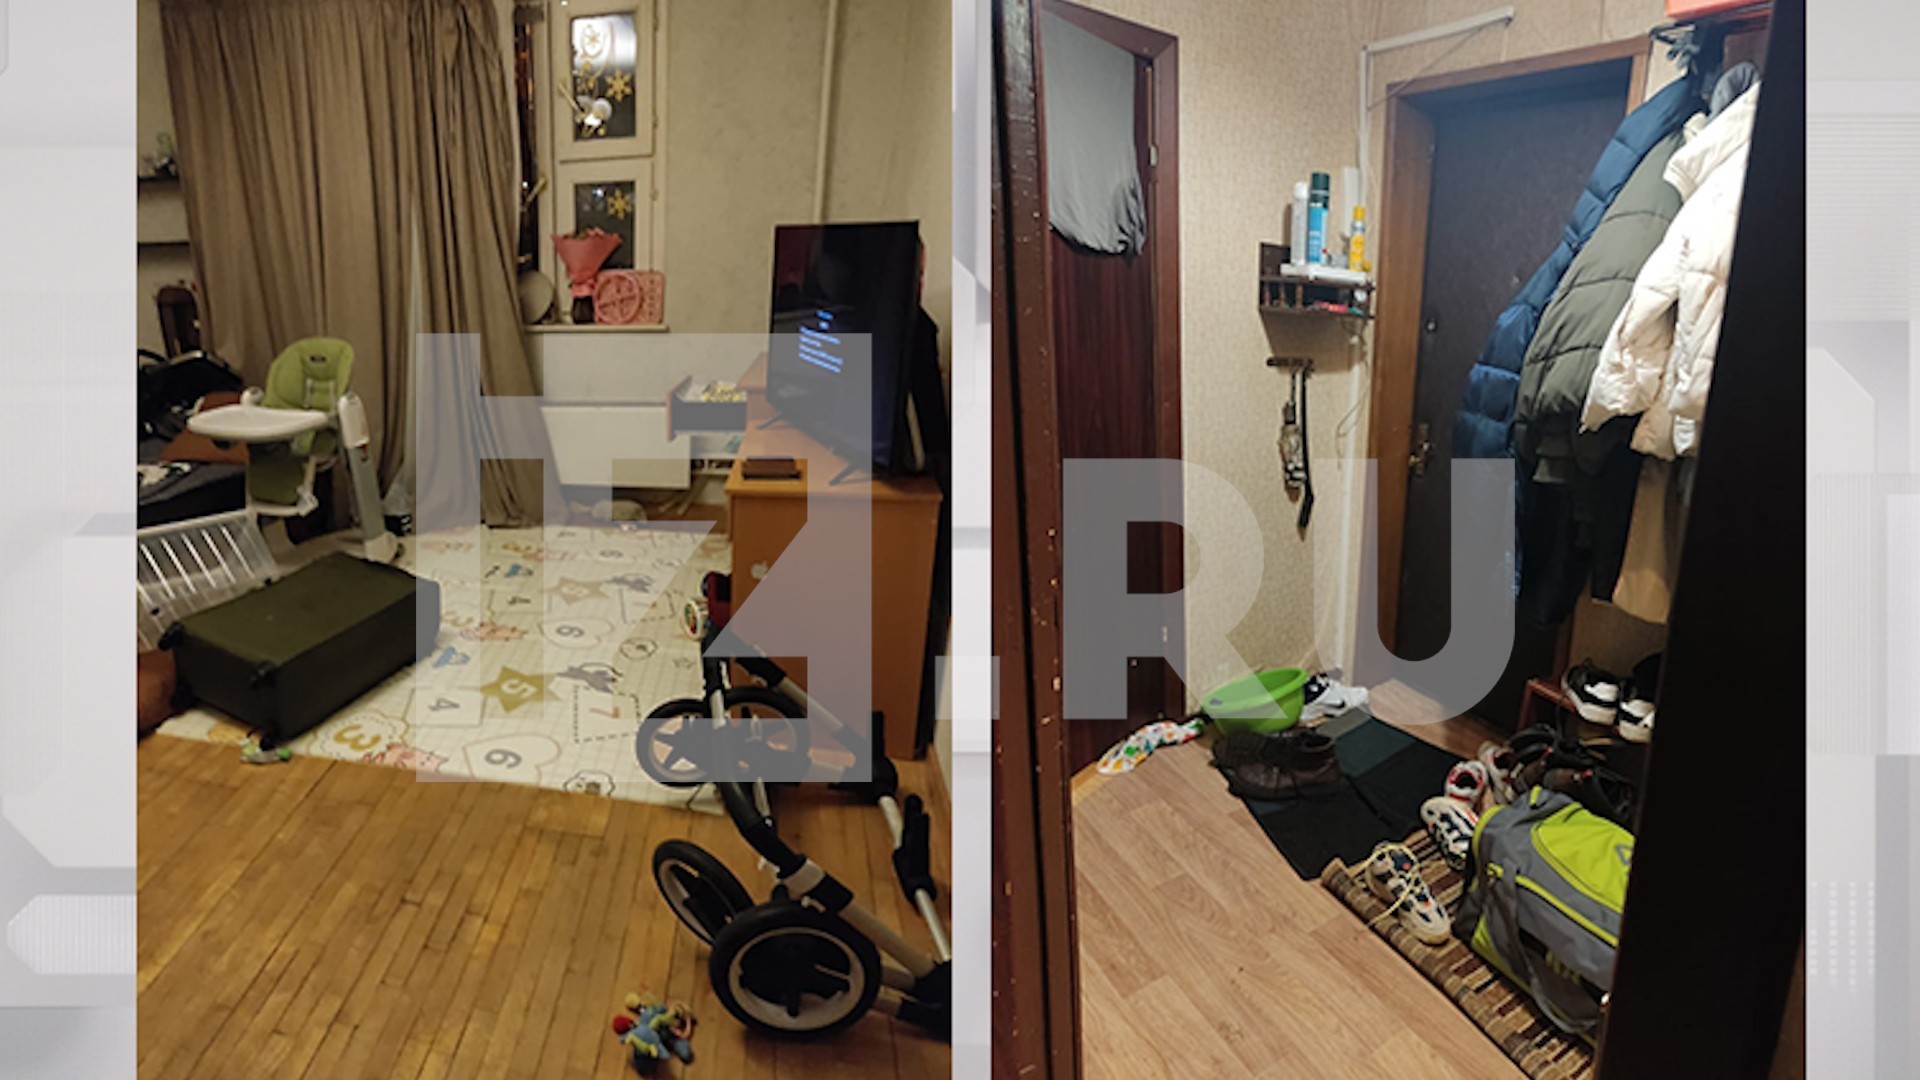 Годовалые дети два дня рыдали в запертой квартире рядом с мертвецом — фото с места